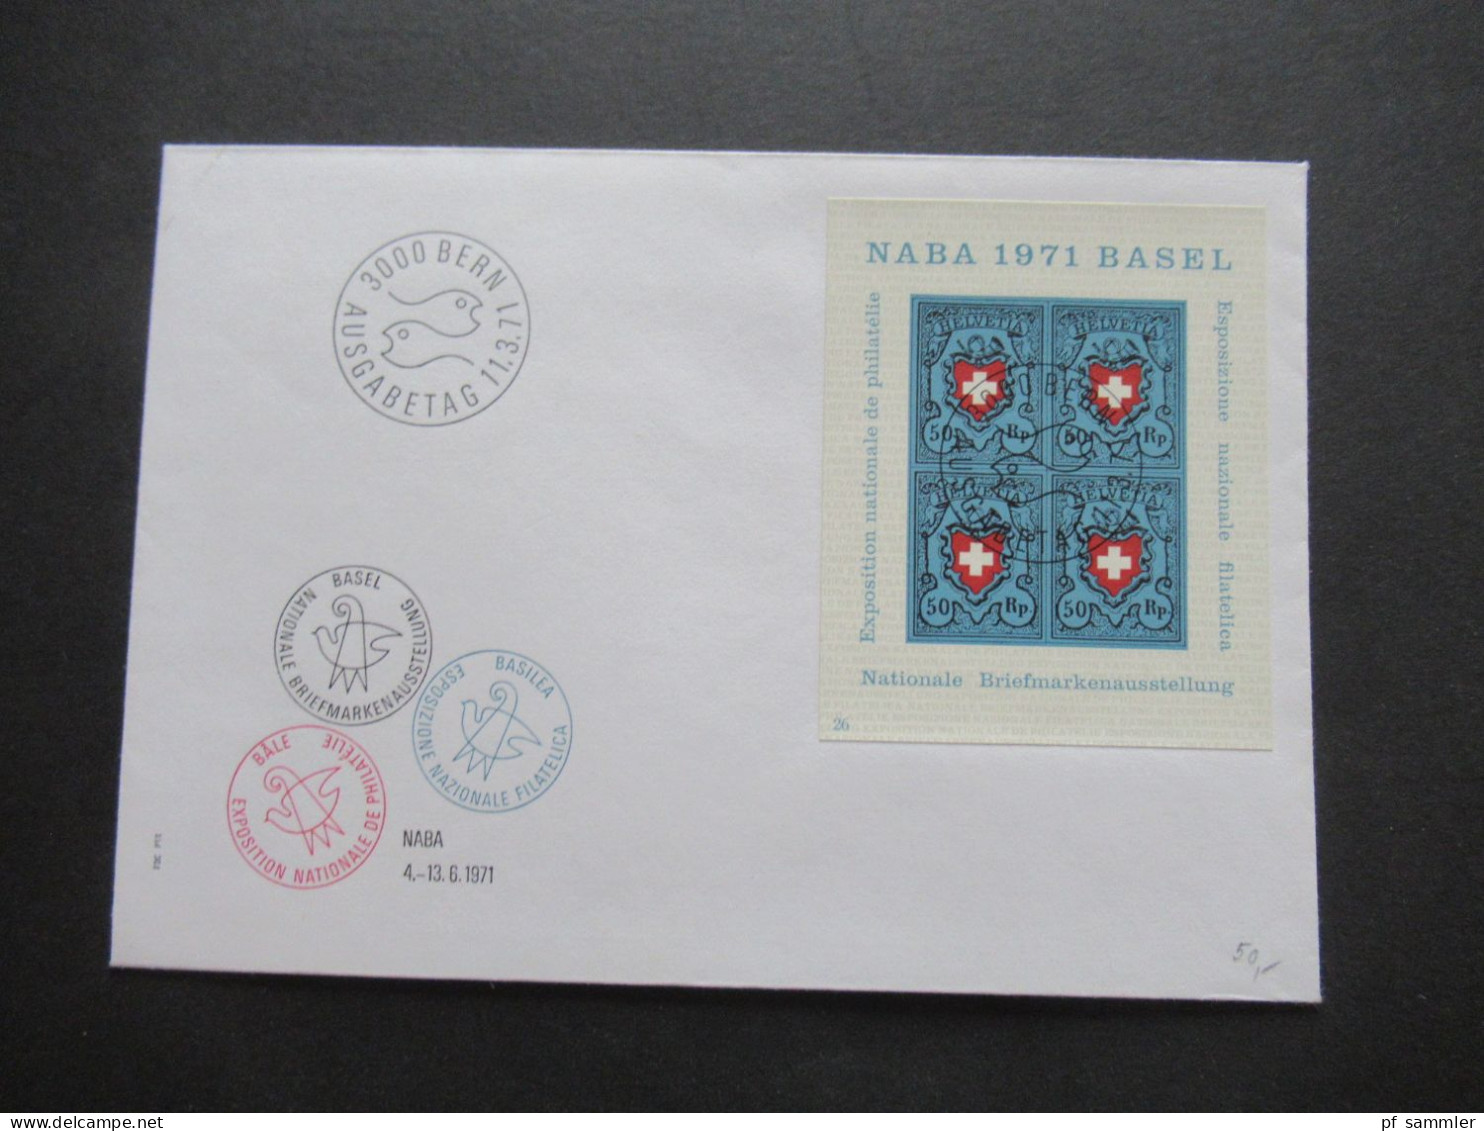 Schweiz 9 Sonderbelege / Einschreiben überwiegend 1970er Jahre / FDC NABA 1971 Block / Pro Patria Teils In Die CSSR Gese - Covers & Documents